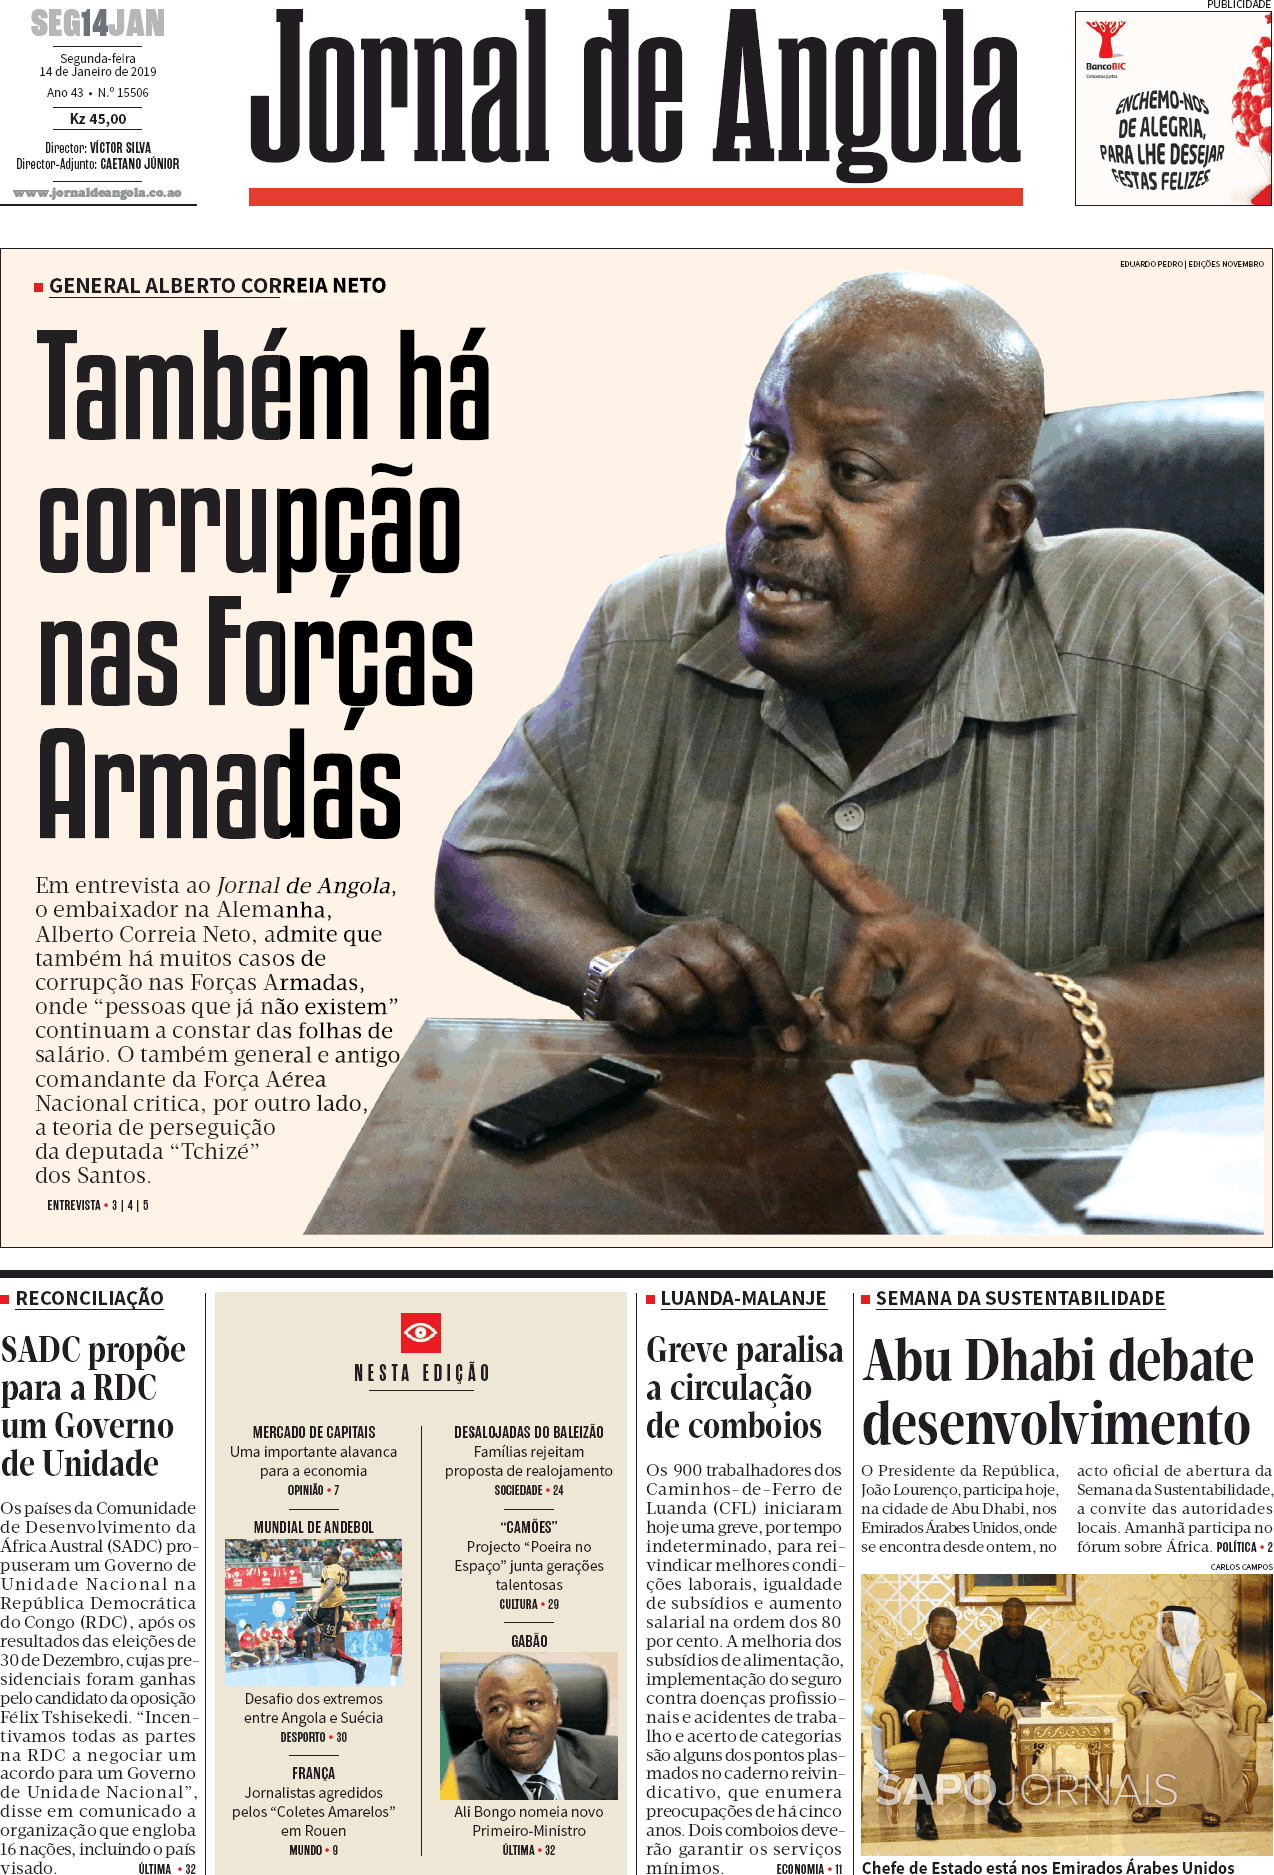 Jornal De Angola 14 Jan 2019 Jornais E Revistas Sapopt Última Hora E Notícias De Hoje 5323